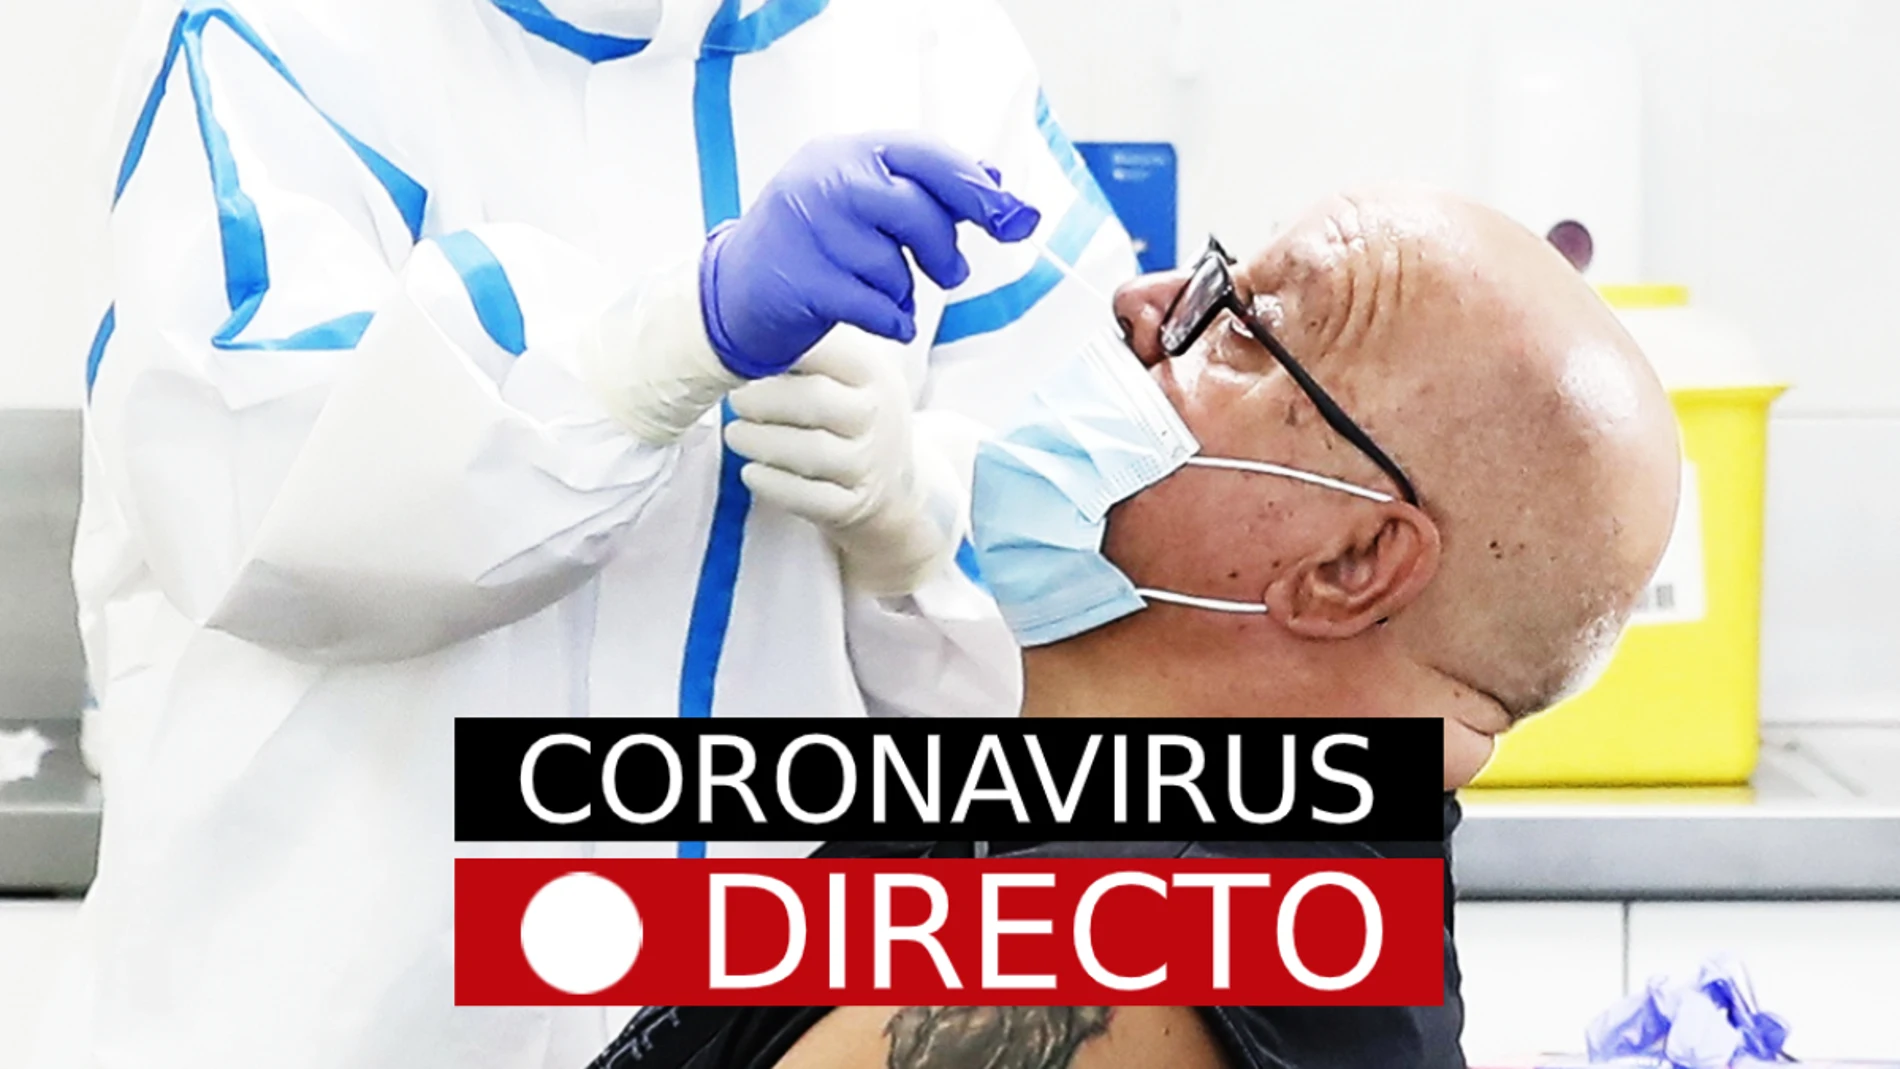 Coronavirus hoy: Noticias de última hora y nuevos casos, en directo